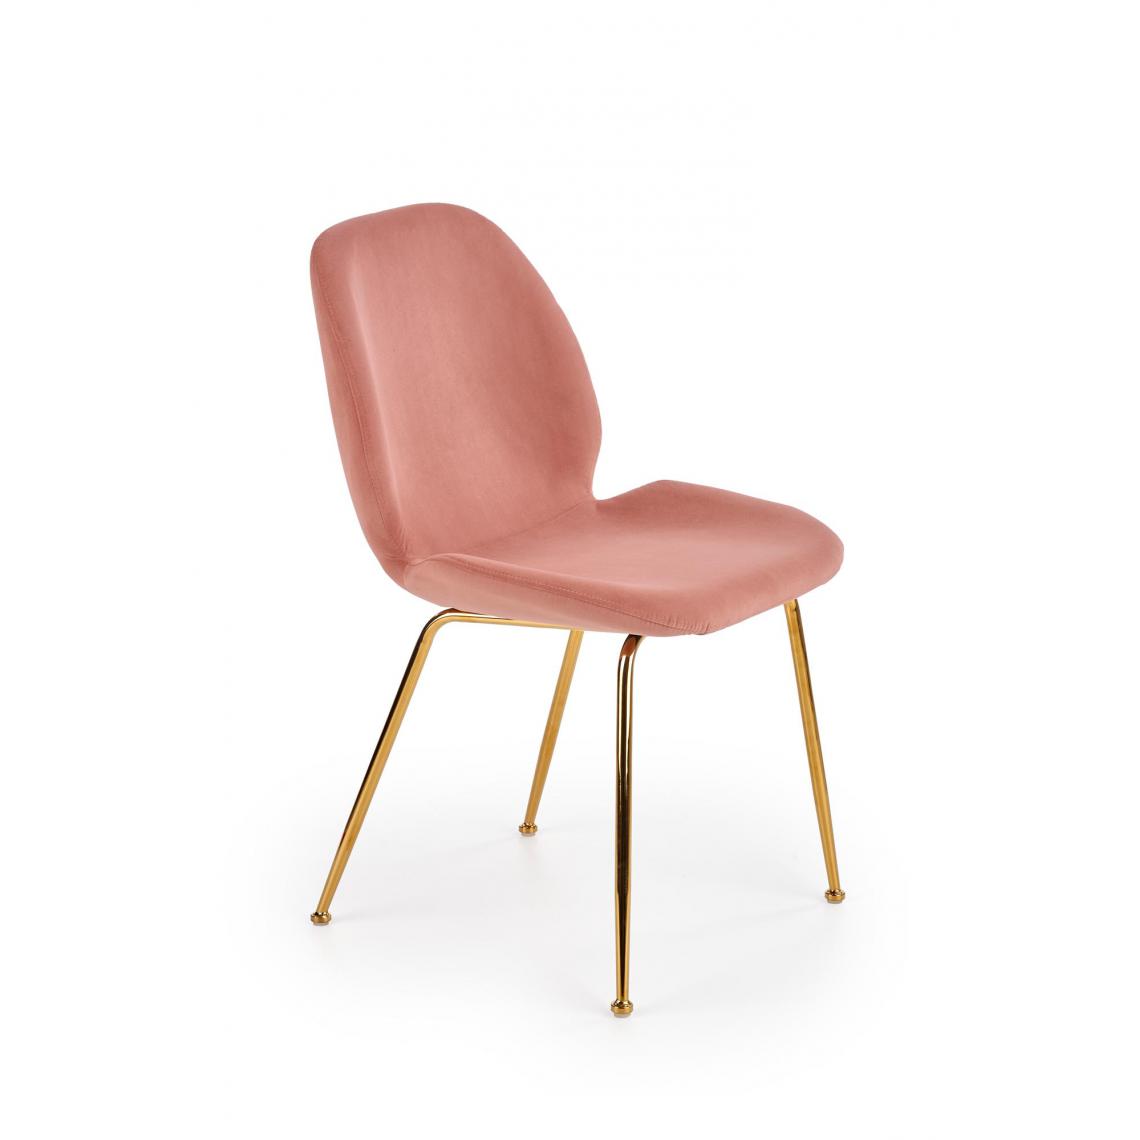 Hucoco - ANASTASIA - Chaise rembourrée style glamour salon/chambre - 88x58x48 - Pieds chromés - Meuble de salle à manger - Rose - Chaises